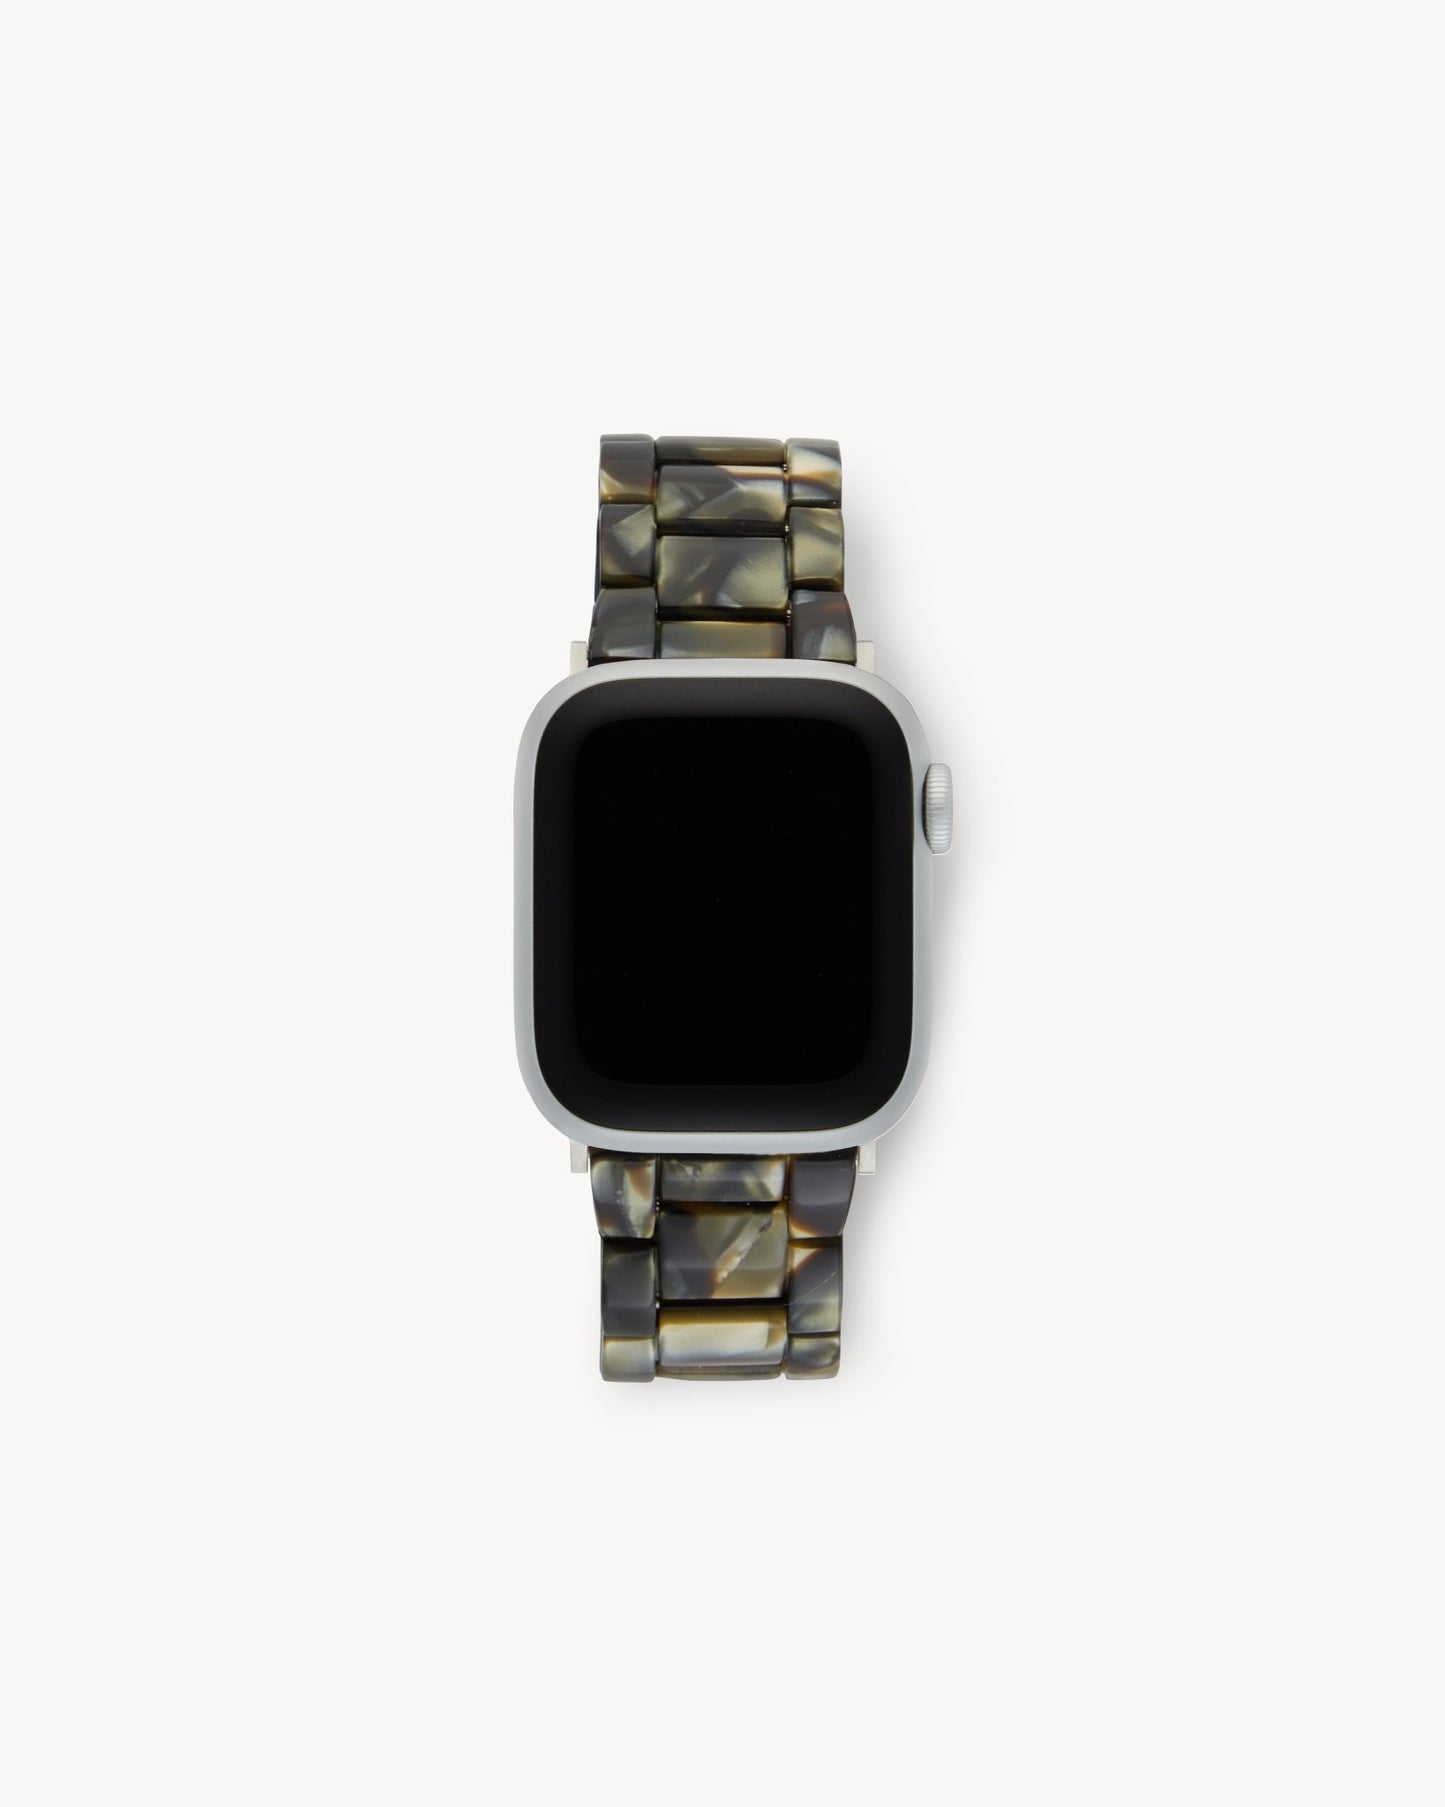 MACHETE Apple Watch Band in Midnight Horn